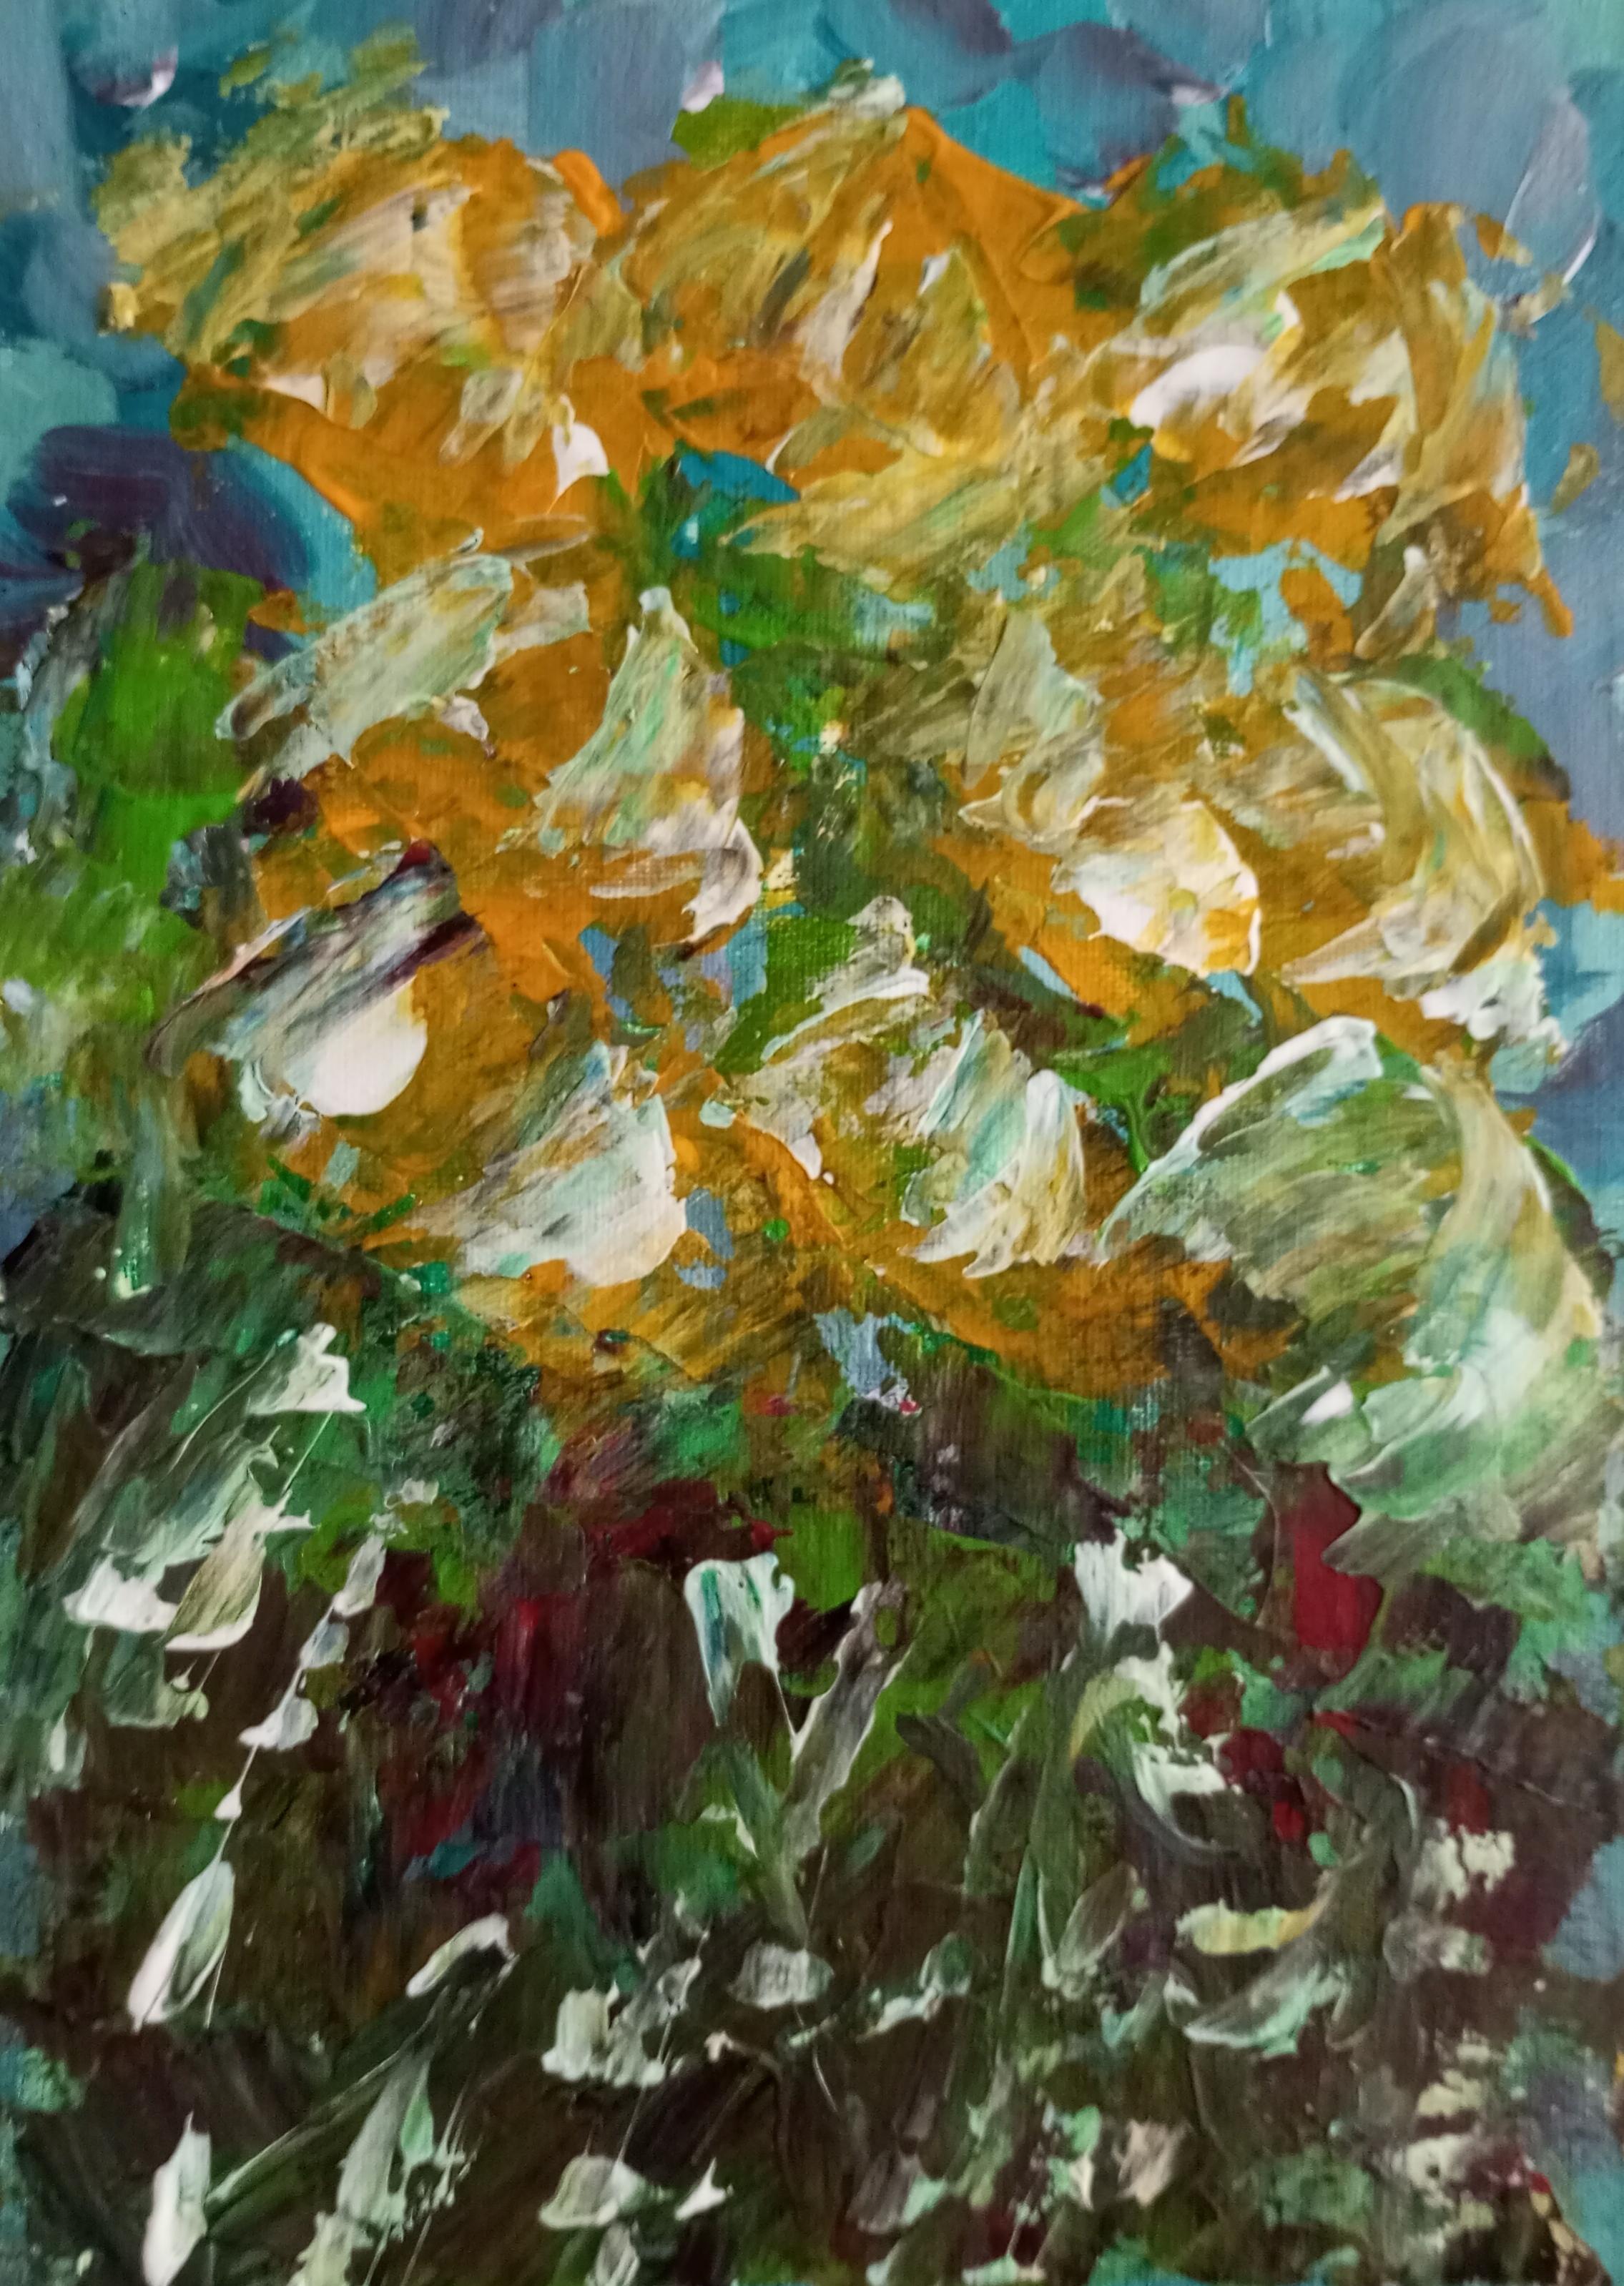 Natalya Mougenot  Abstract Painting -  "Spring blooming"